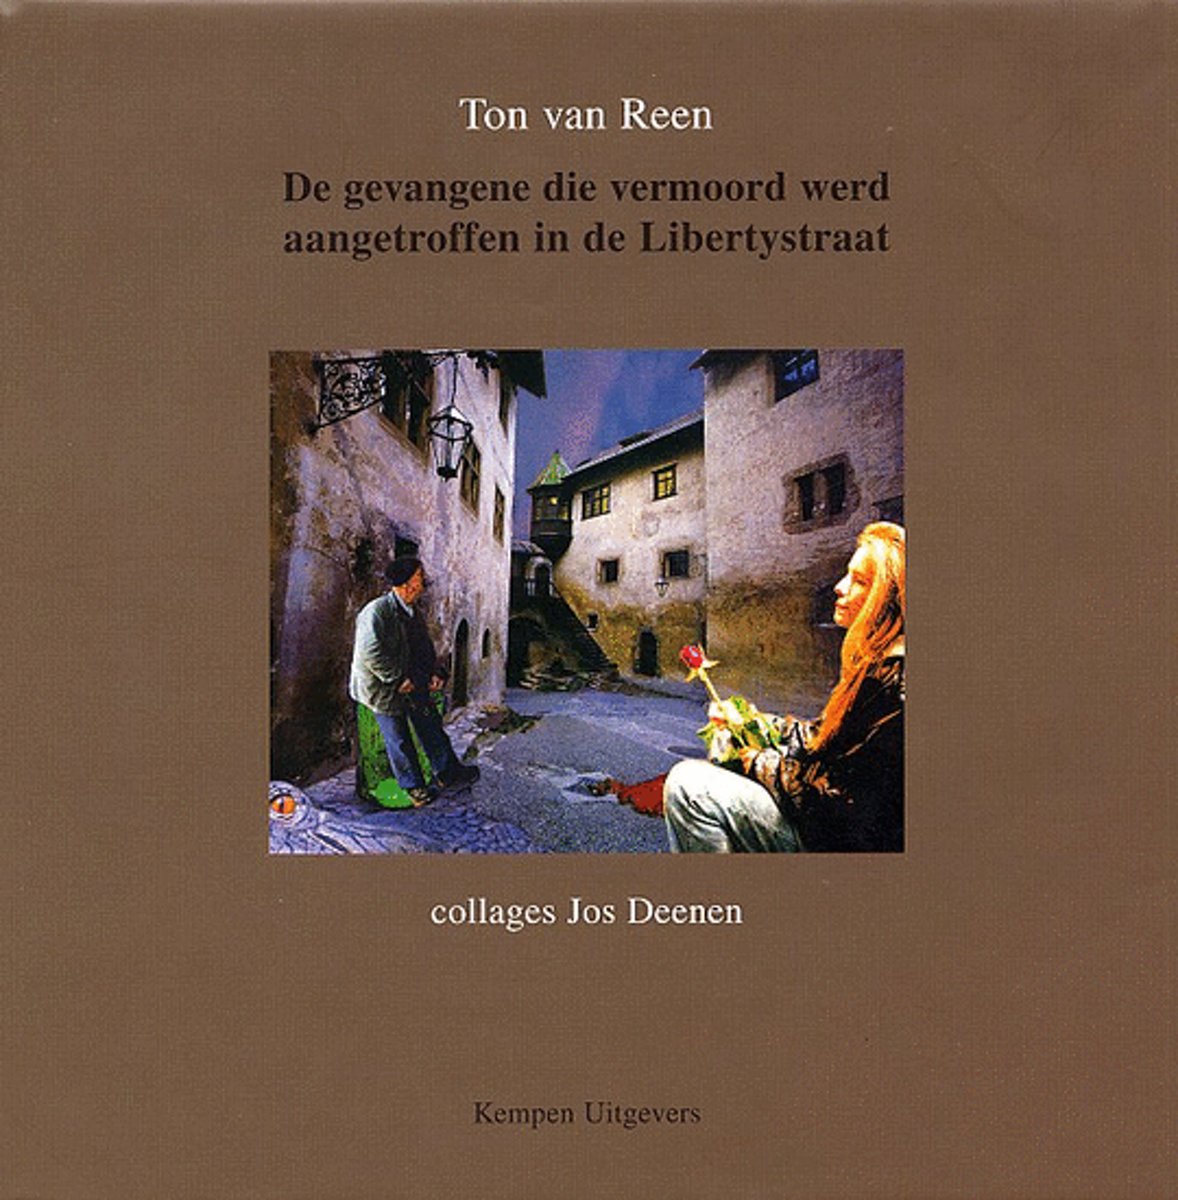 De Gevangene Die Vermoord Werd Aangetroffen In De Libertystraat, Kempen Uitgevers, 2003, Hardcover